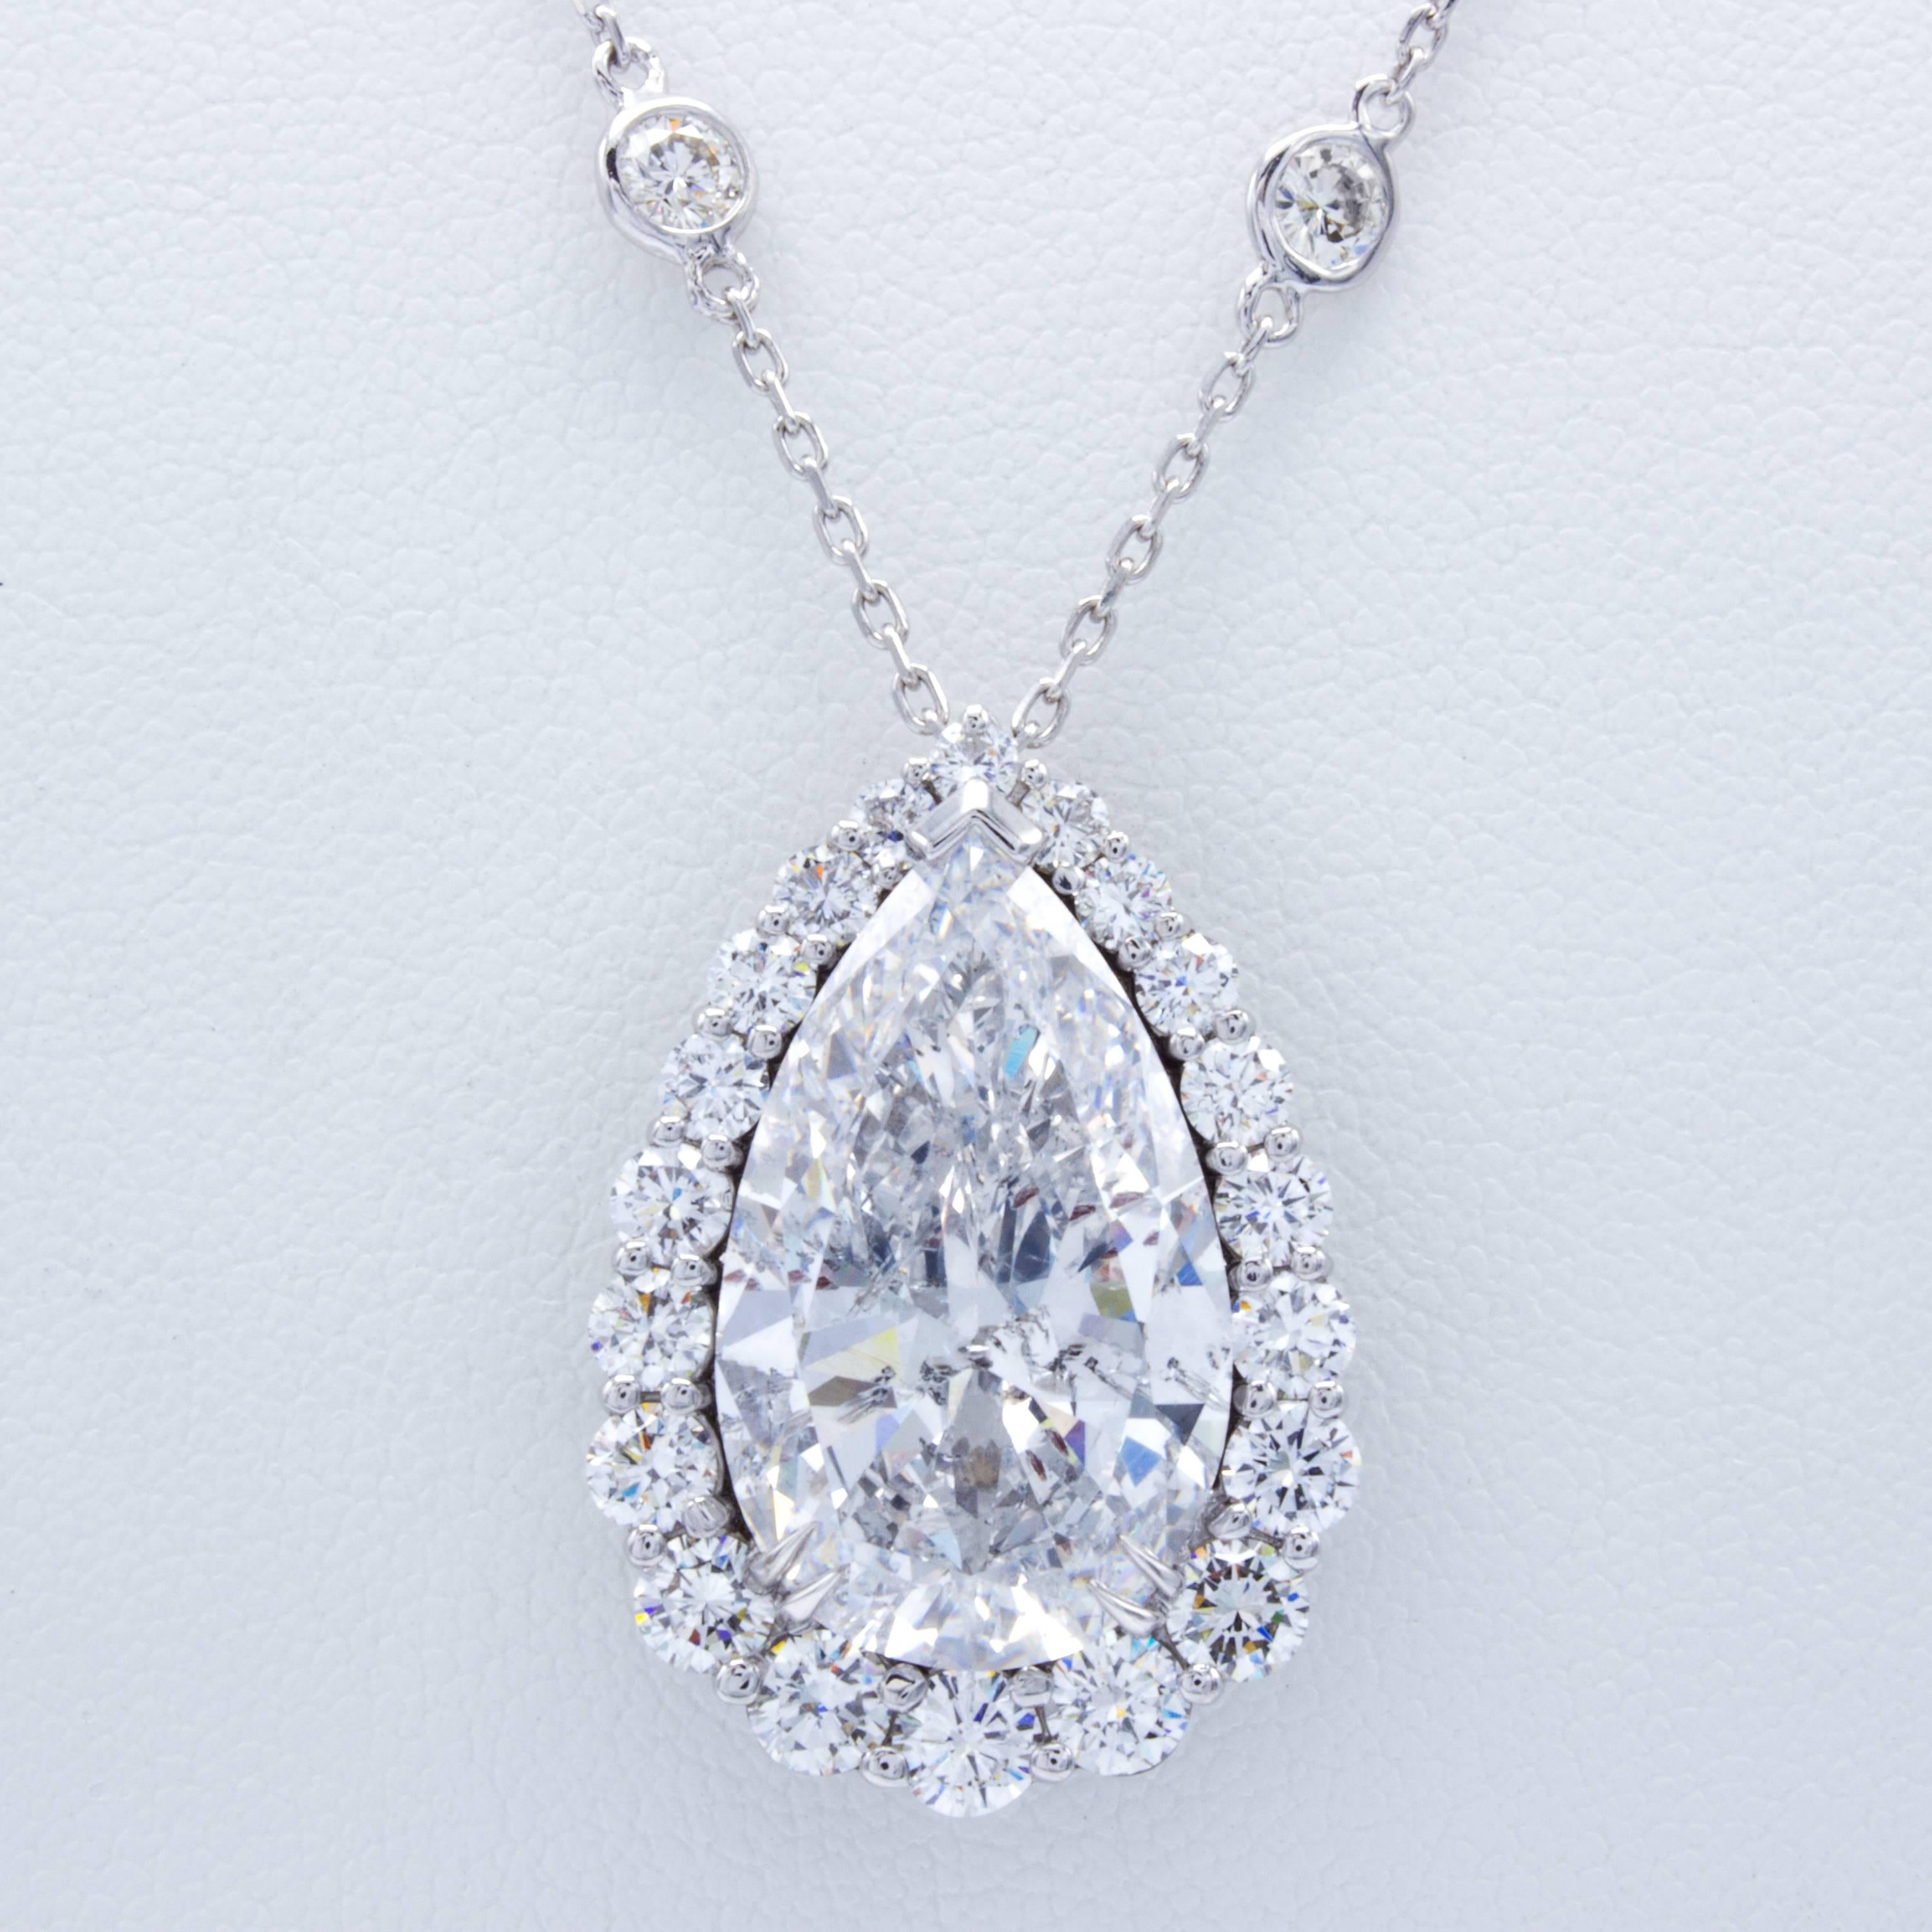 12 carat diamond necklace